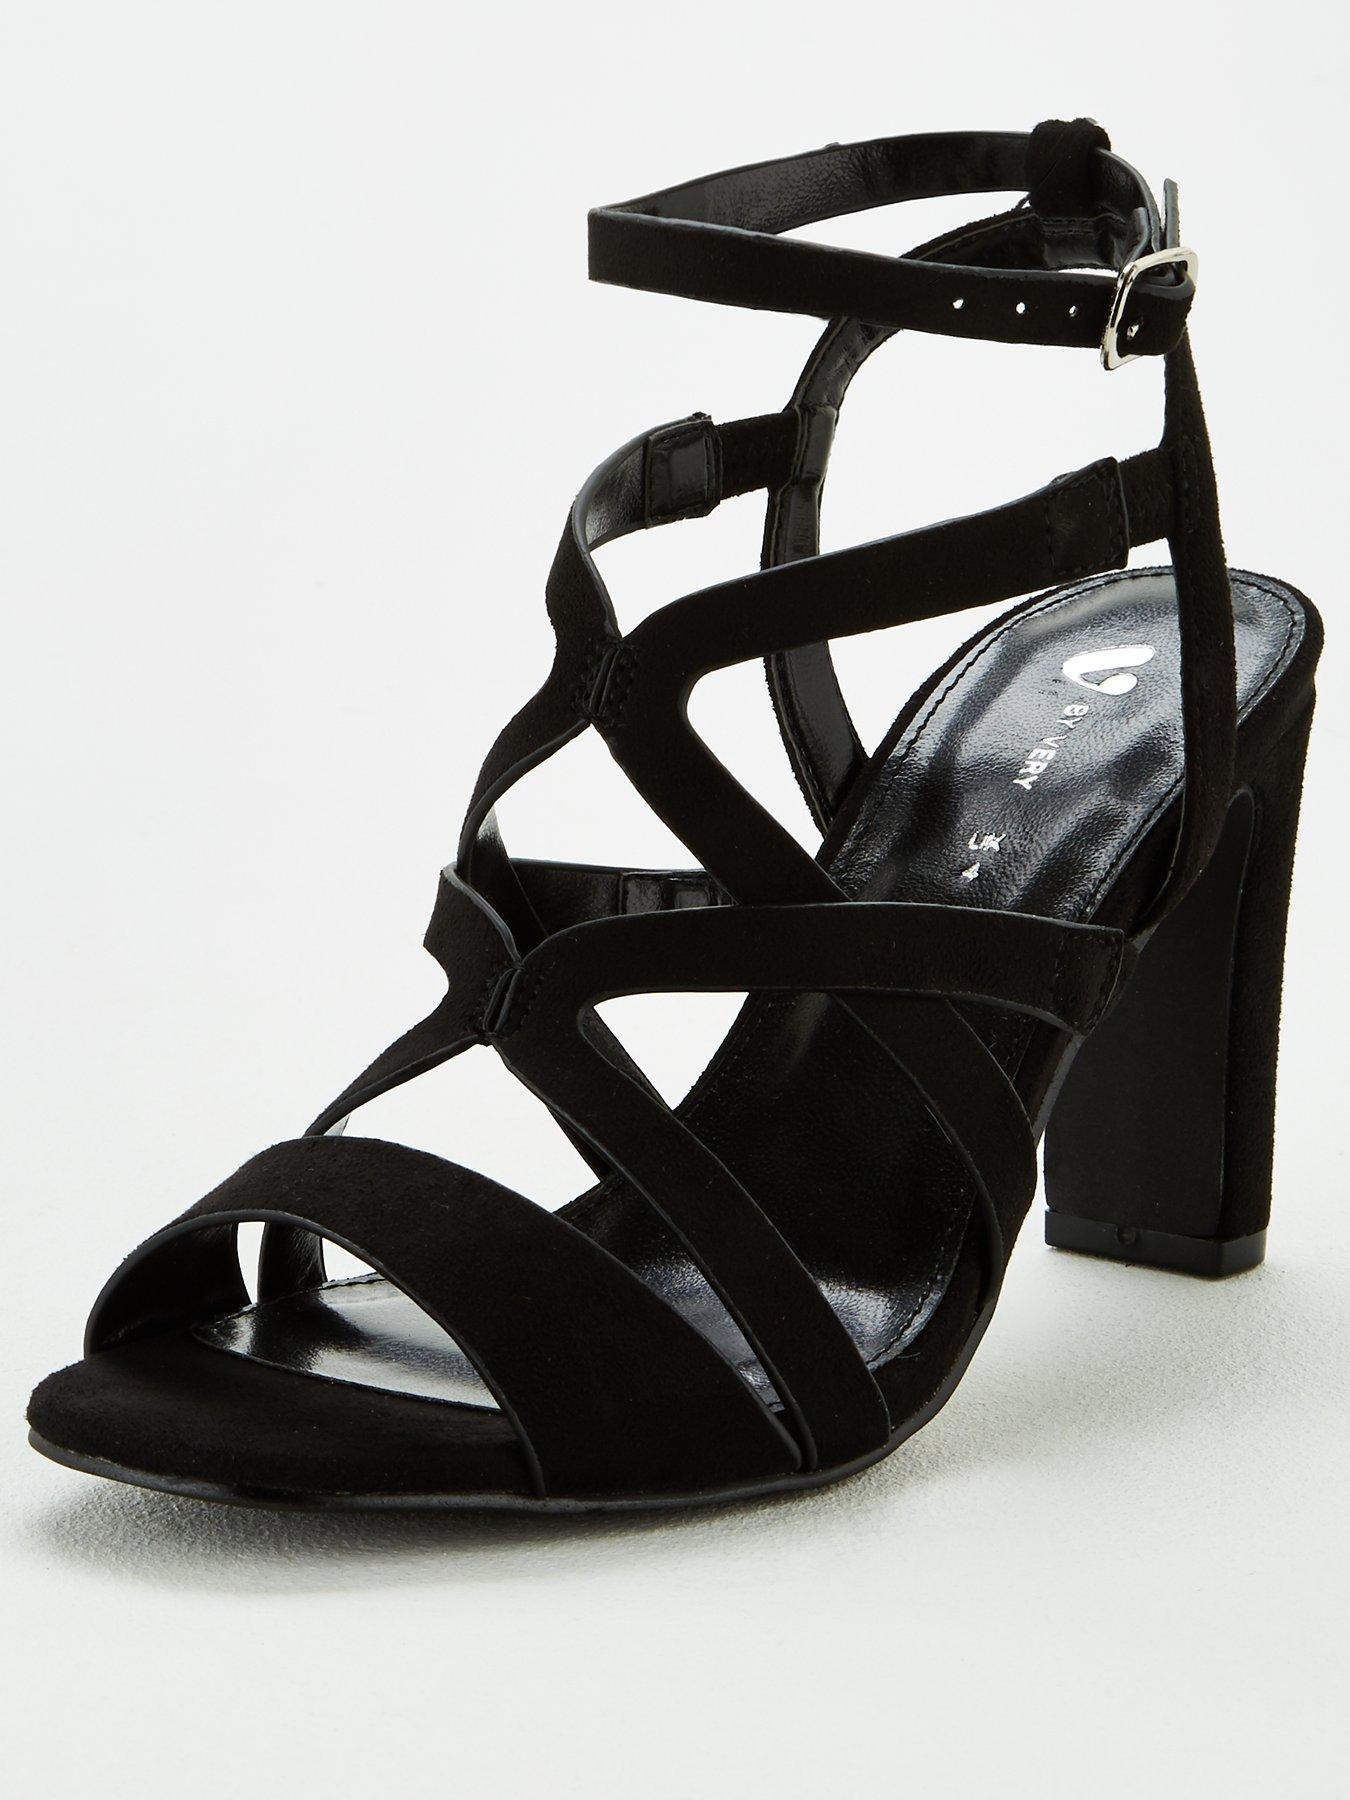 black heels ireland